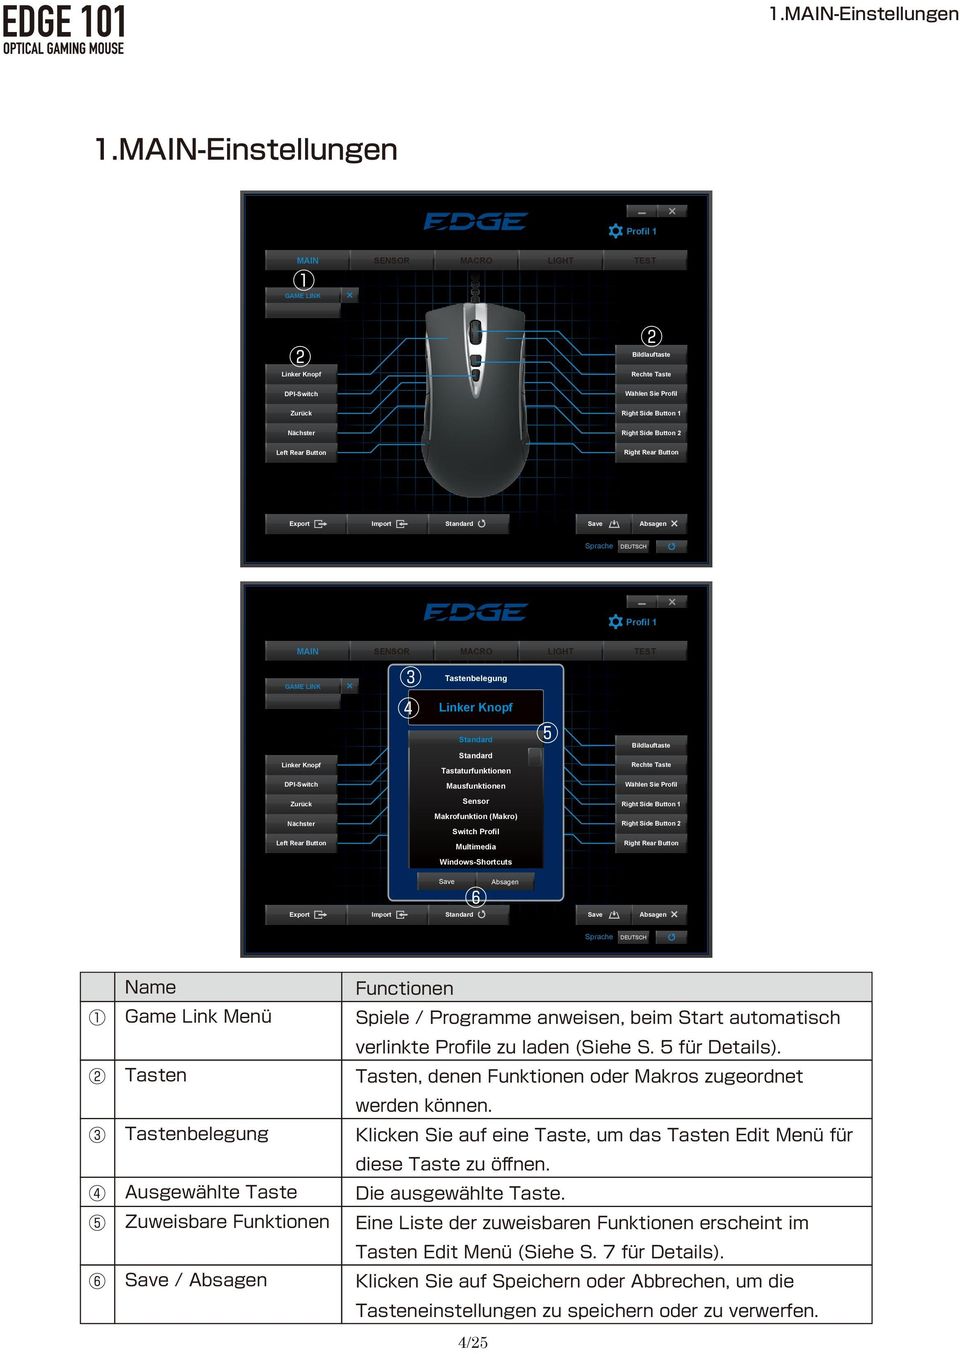 Standard Standard Tastaturfunktionen Mausfunktionen Sensor Makrofunktion (Makro) Switch Profil Multimedia Windows-Shortcuts